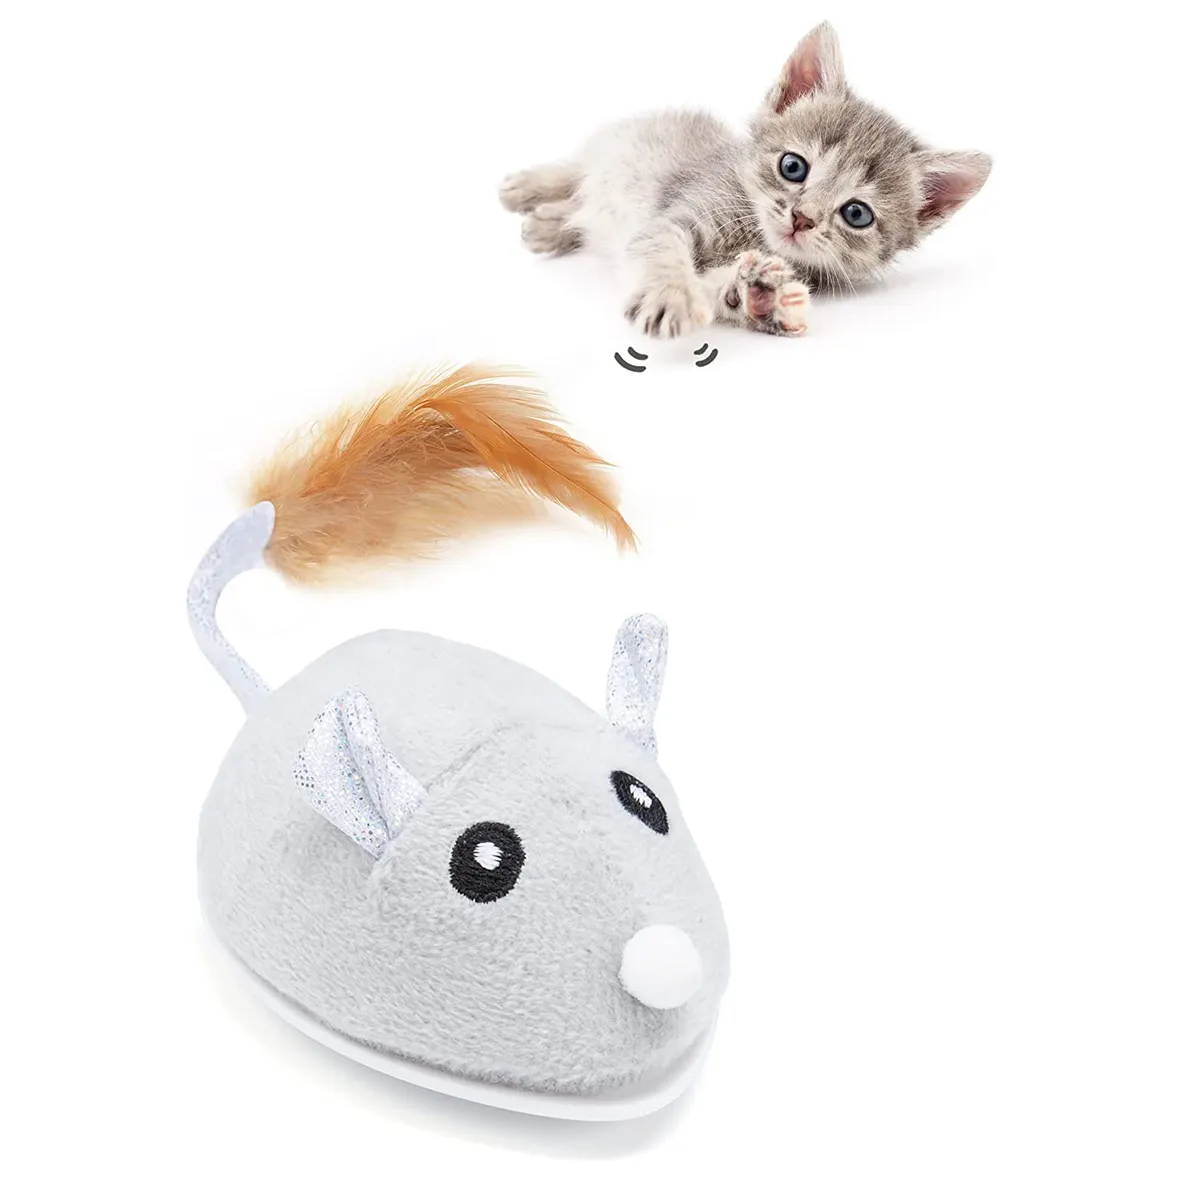 Petchain बिल्ली खिलौने के लिए इंडोर स्वचालित बिल्ली माउस खिलौना के साथ पंख पूंछ किट्टी खिलौने यूएसबी चार्ज के साथ